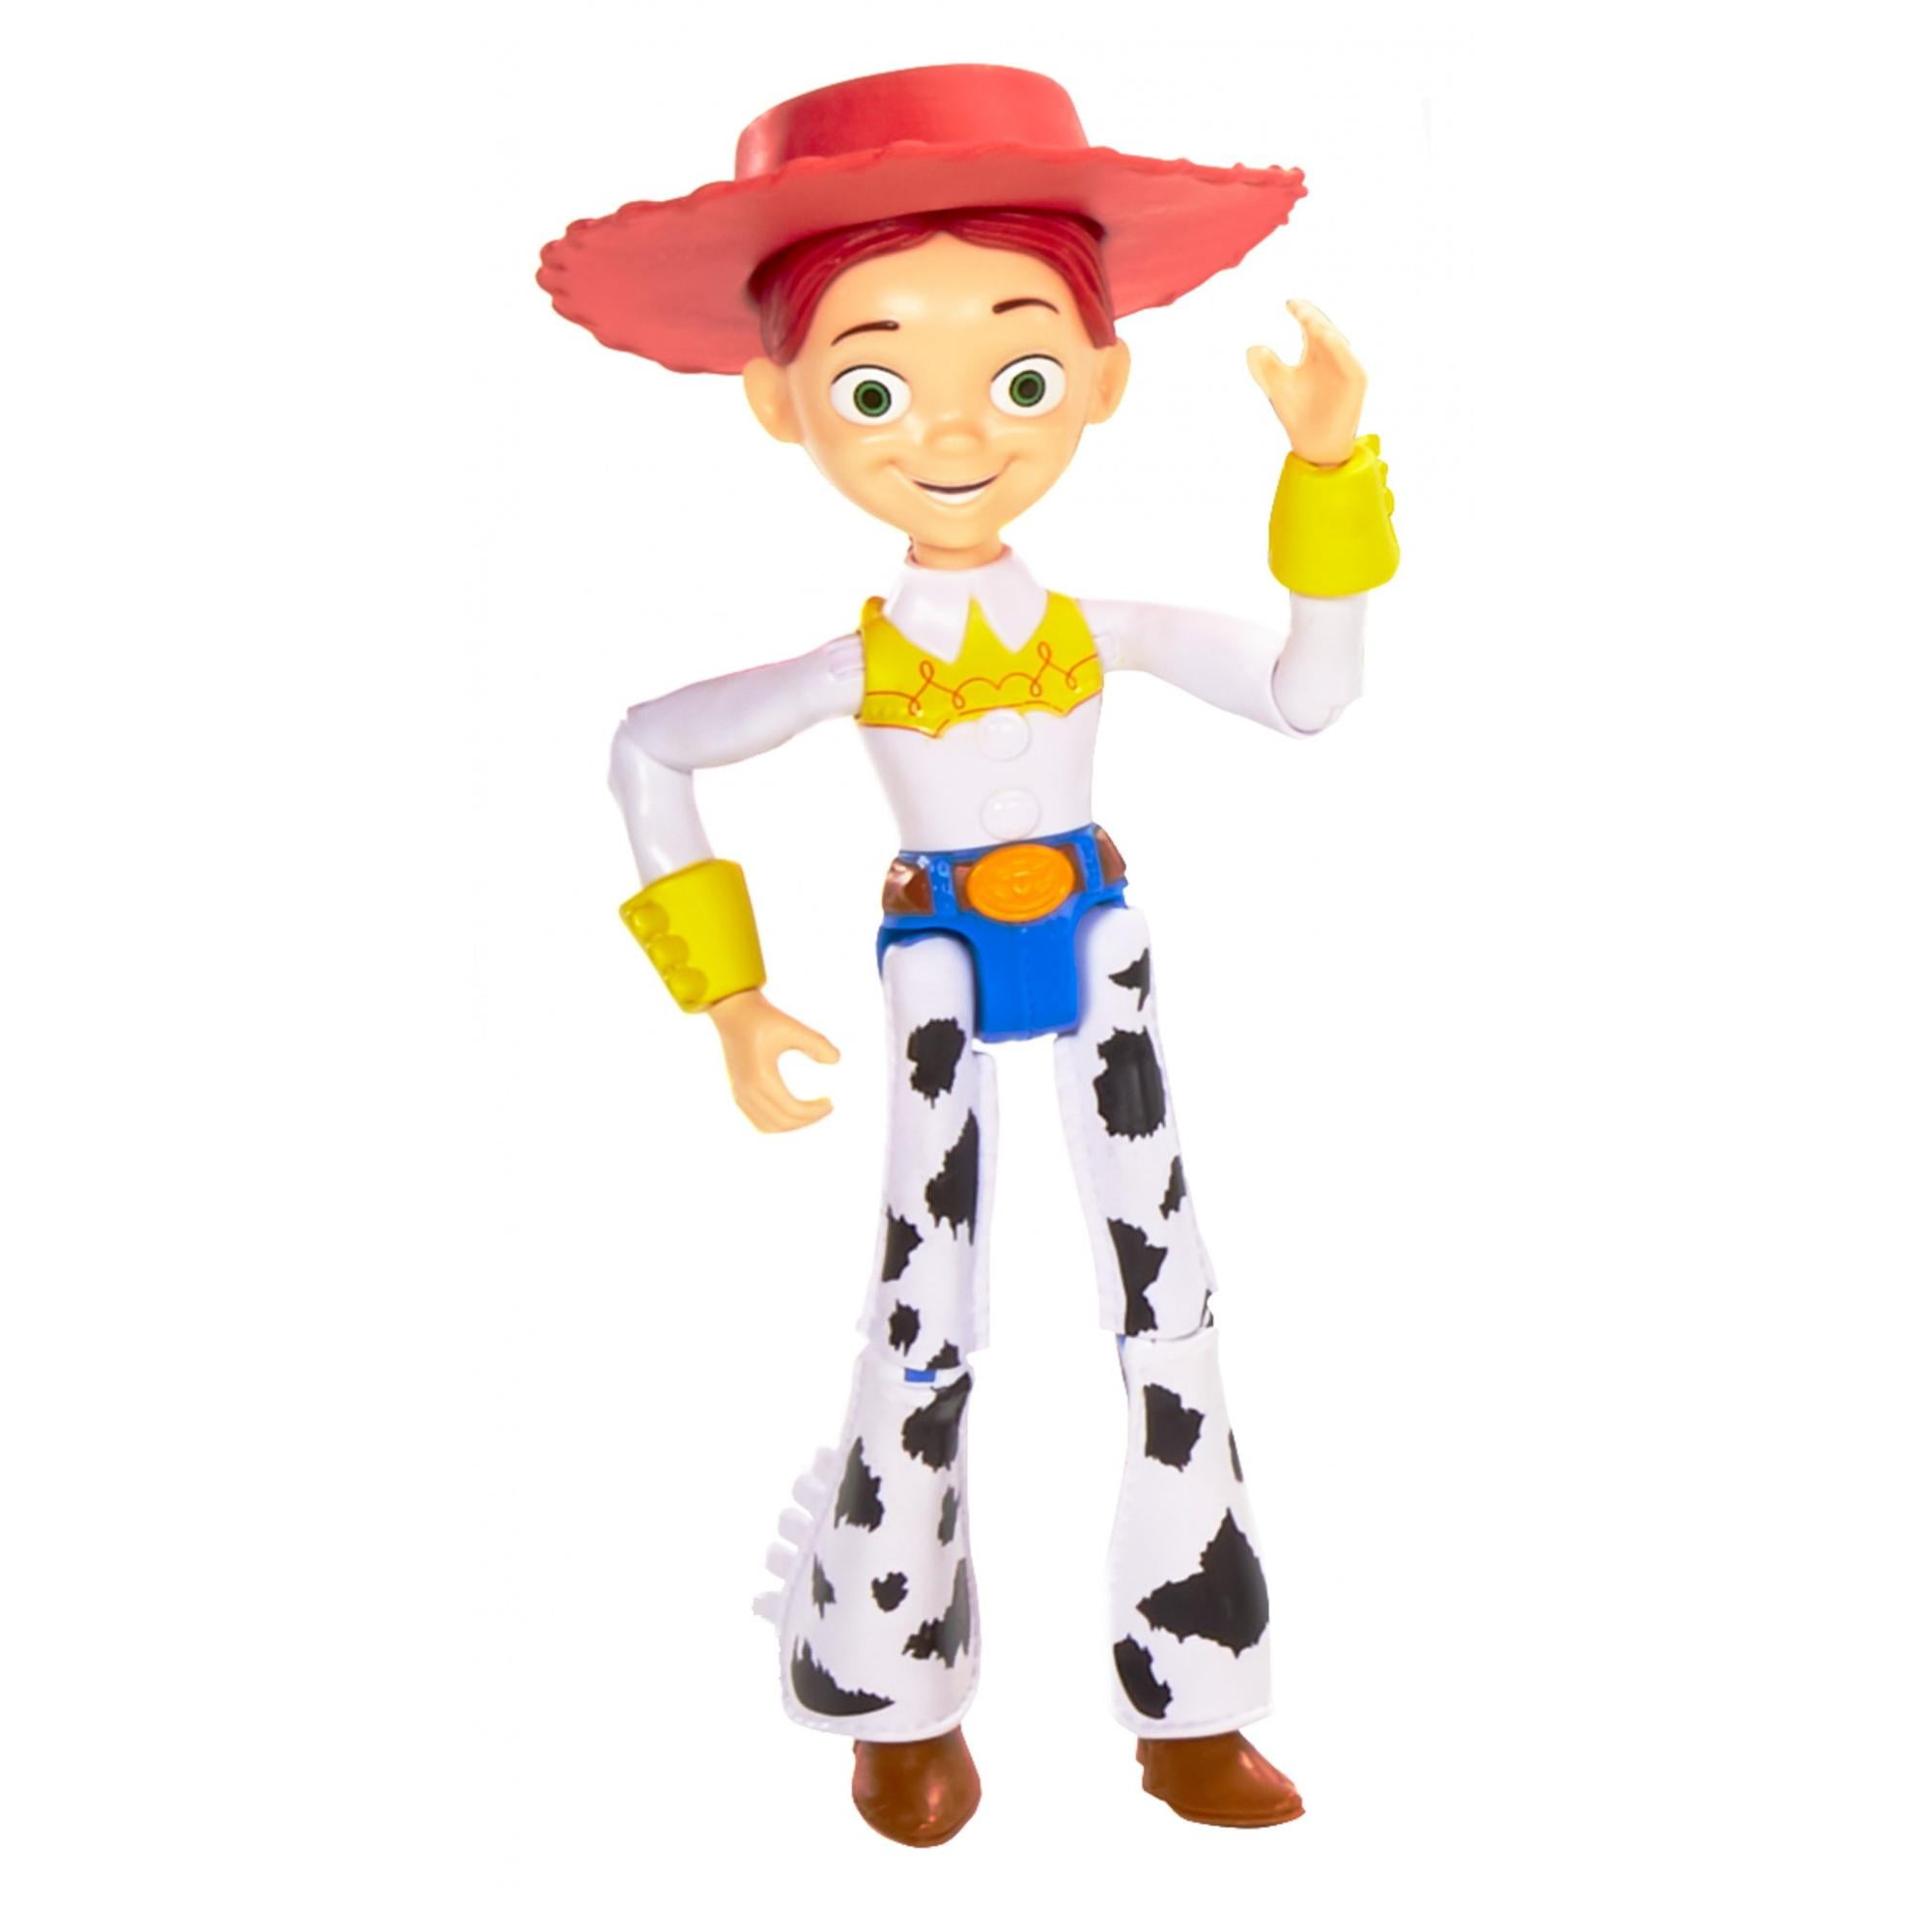 Toy Story 4 JESSIE Talking Doll Disney Pixar NEW Jesse Girl Cowgirl 